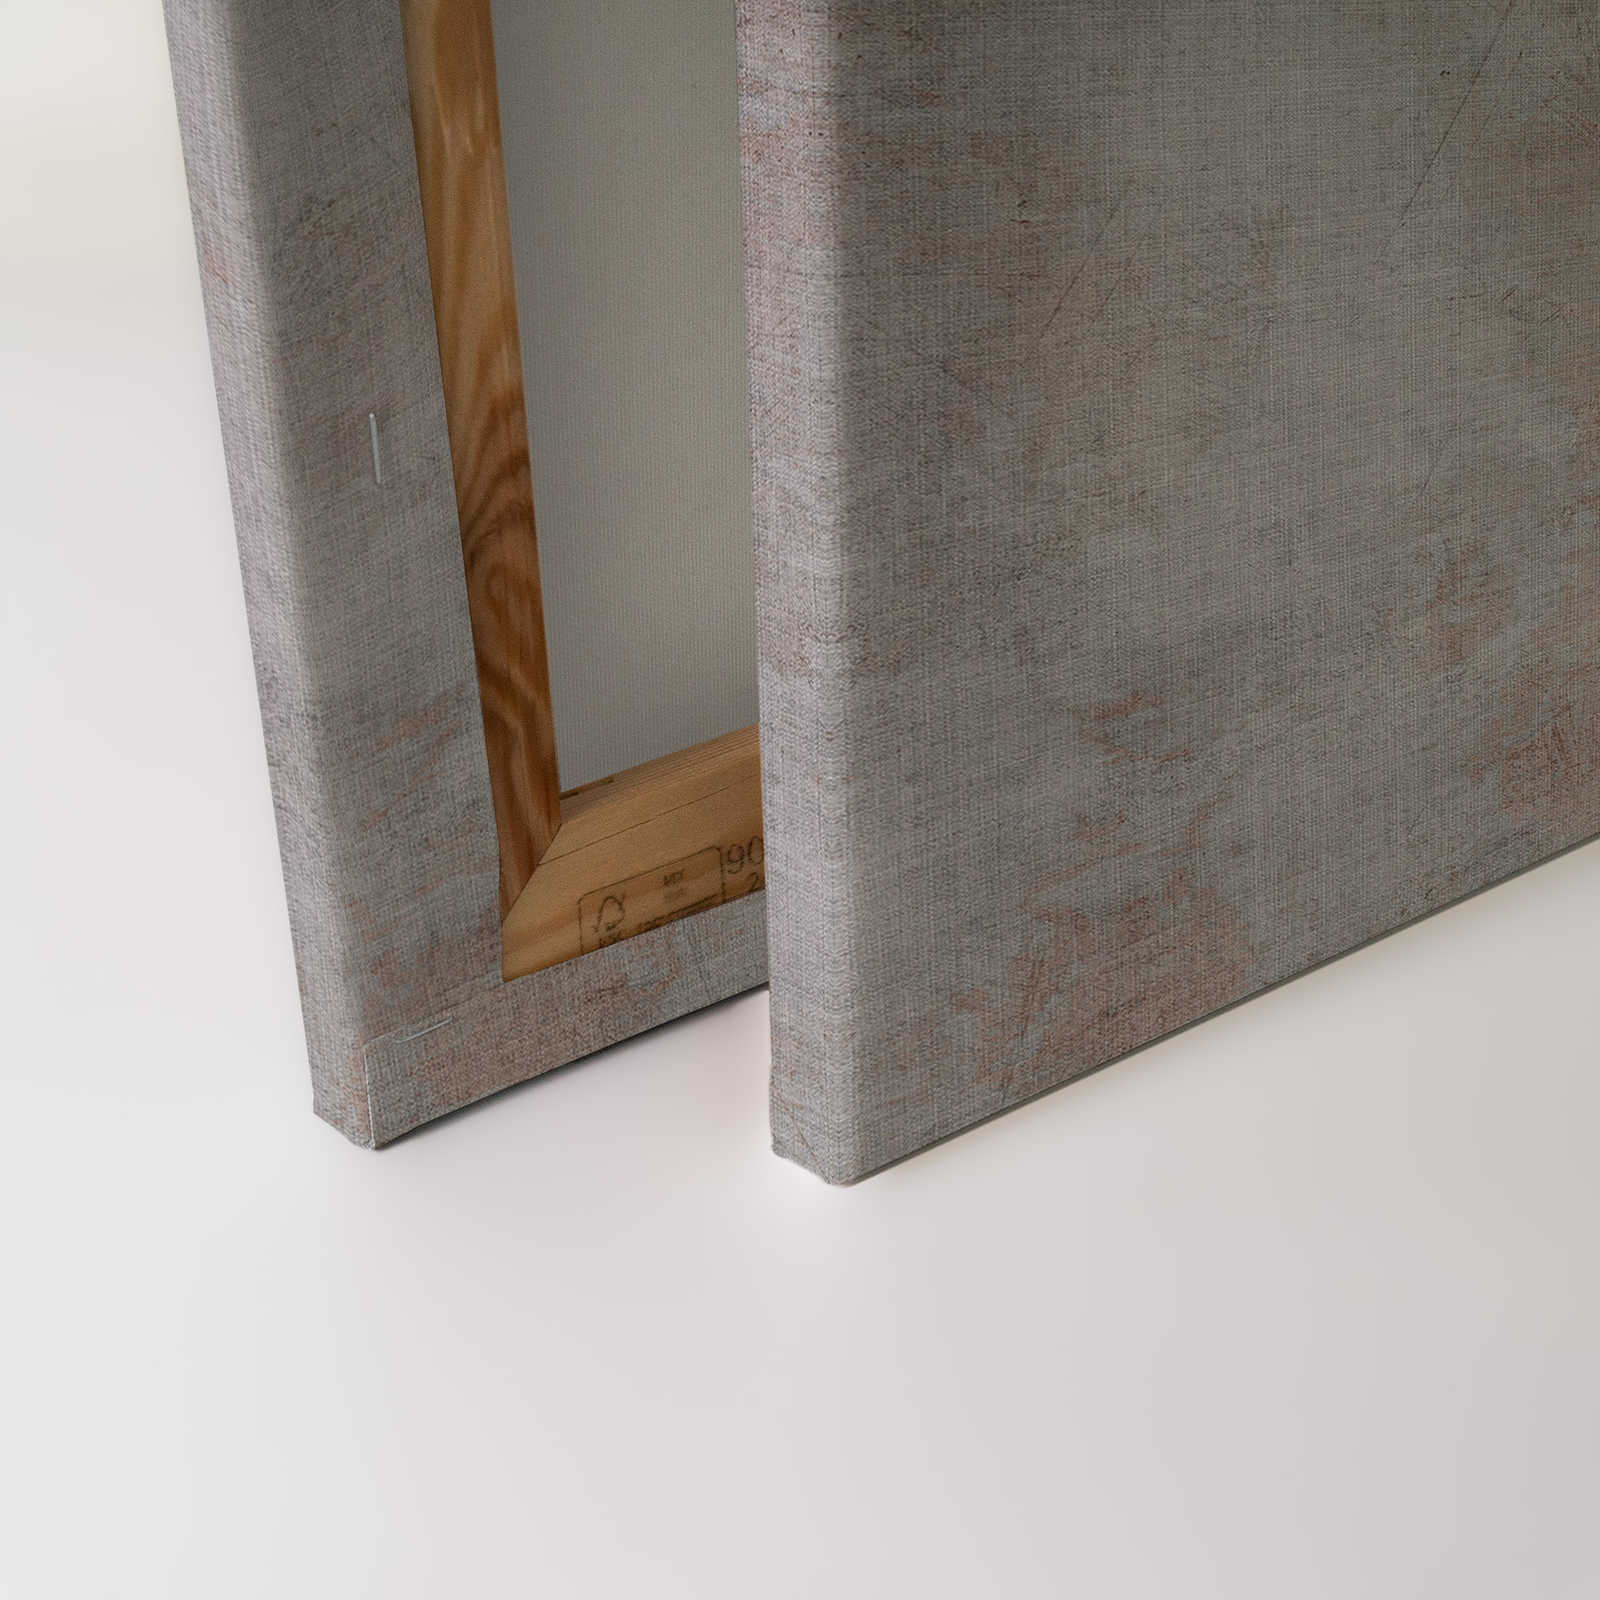             Big three 1 - Quadro in tela effetto cemento con lupo - struttura in lino naturale - 0,90 m x 0,60 m
        